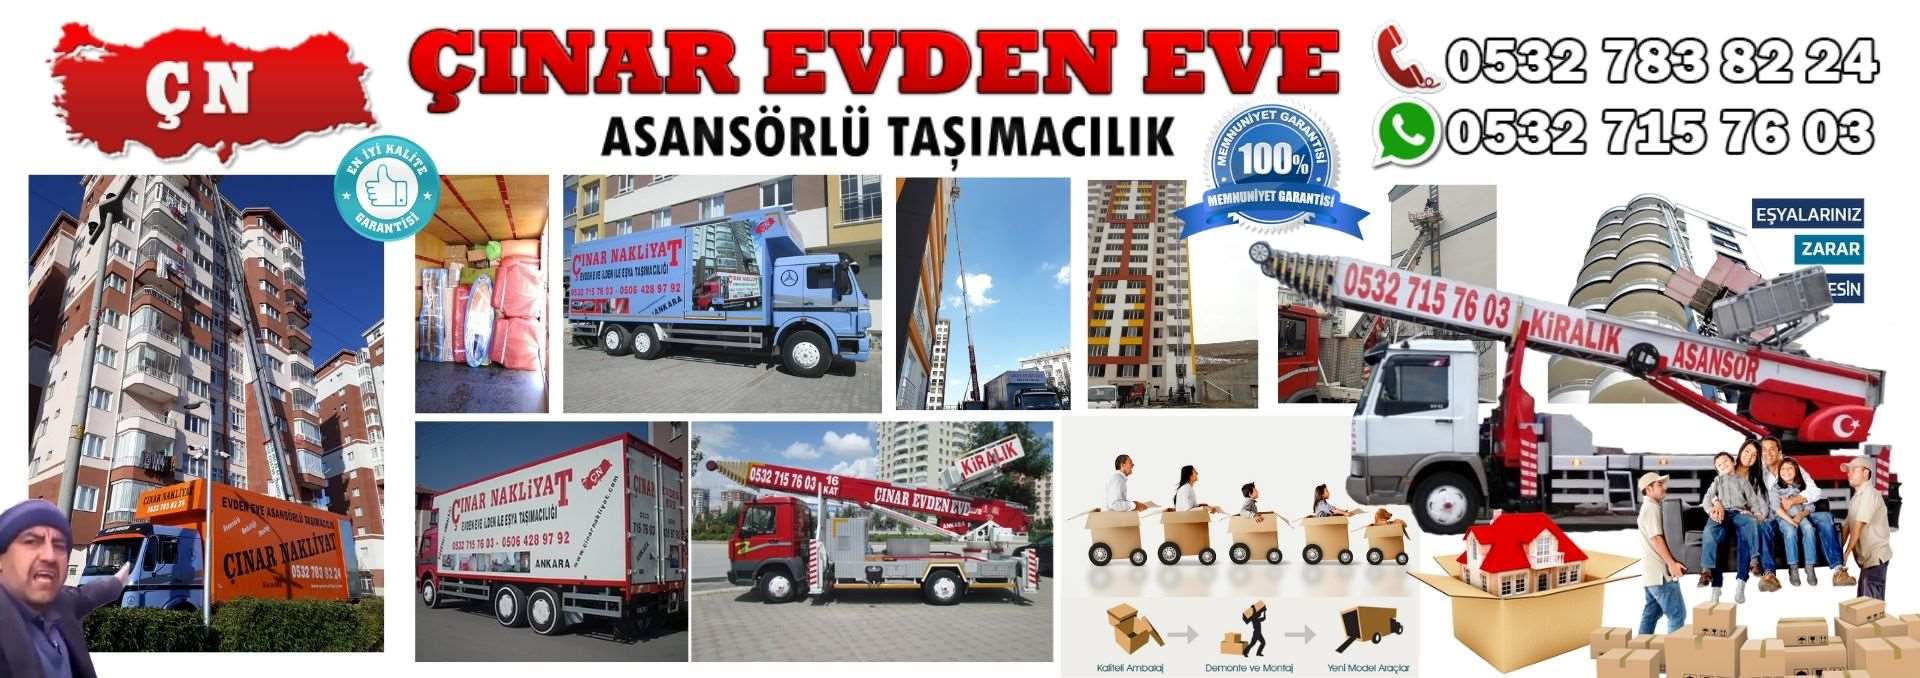 Ankara Akyurt Evden Eve Asansörlü Ev Eşyası Taşıma 0532 715 76 03